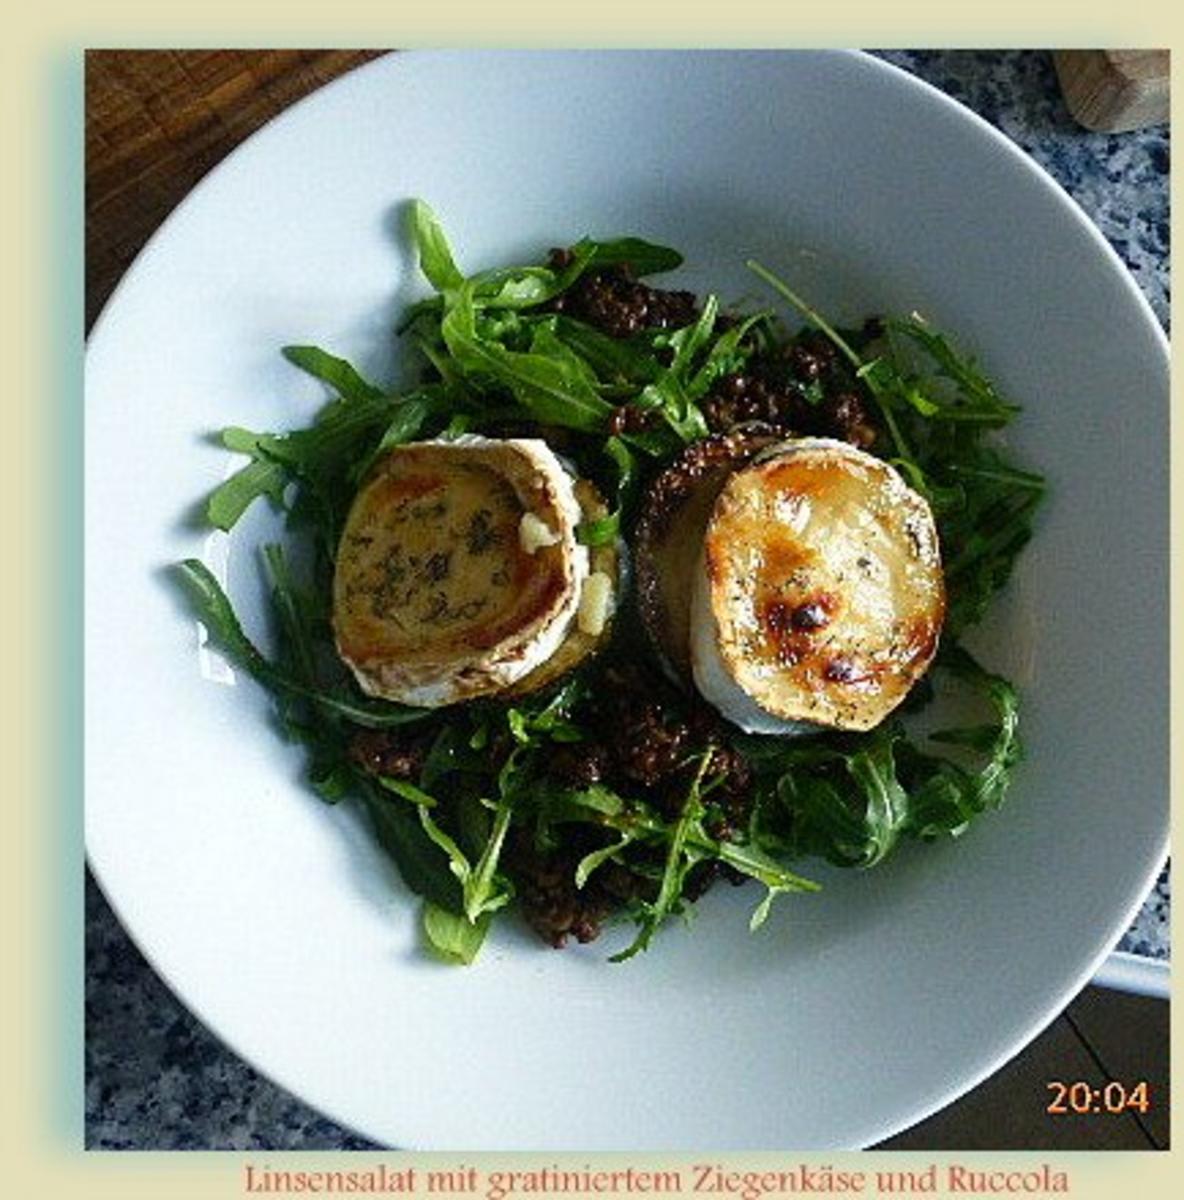 Salat von Linsen und Rucola mit gratiniertem Ziegenkäse - Rezept - Bild Nr. 7